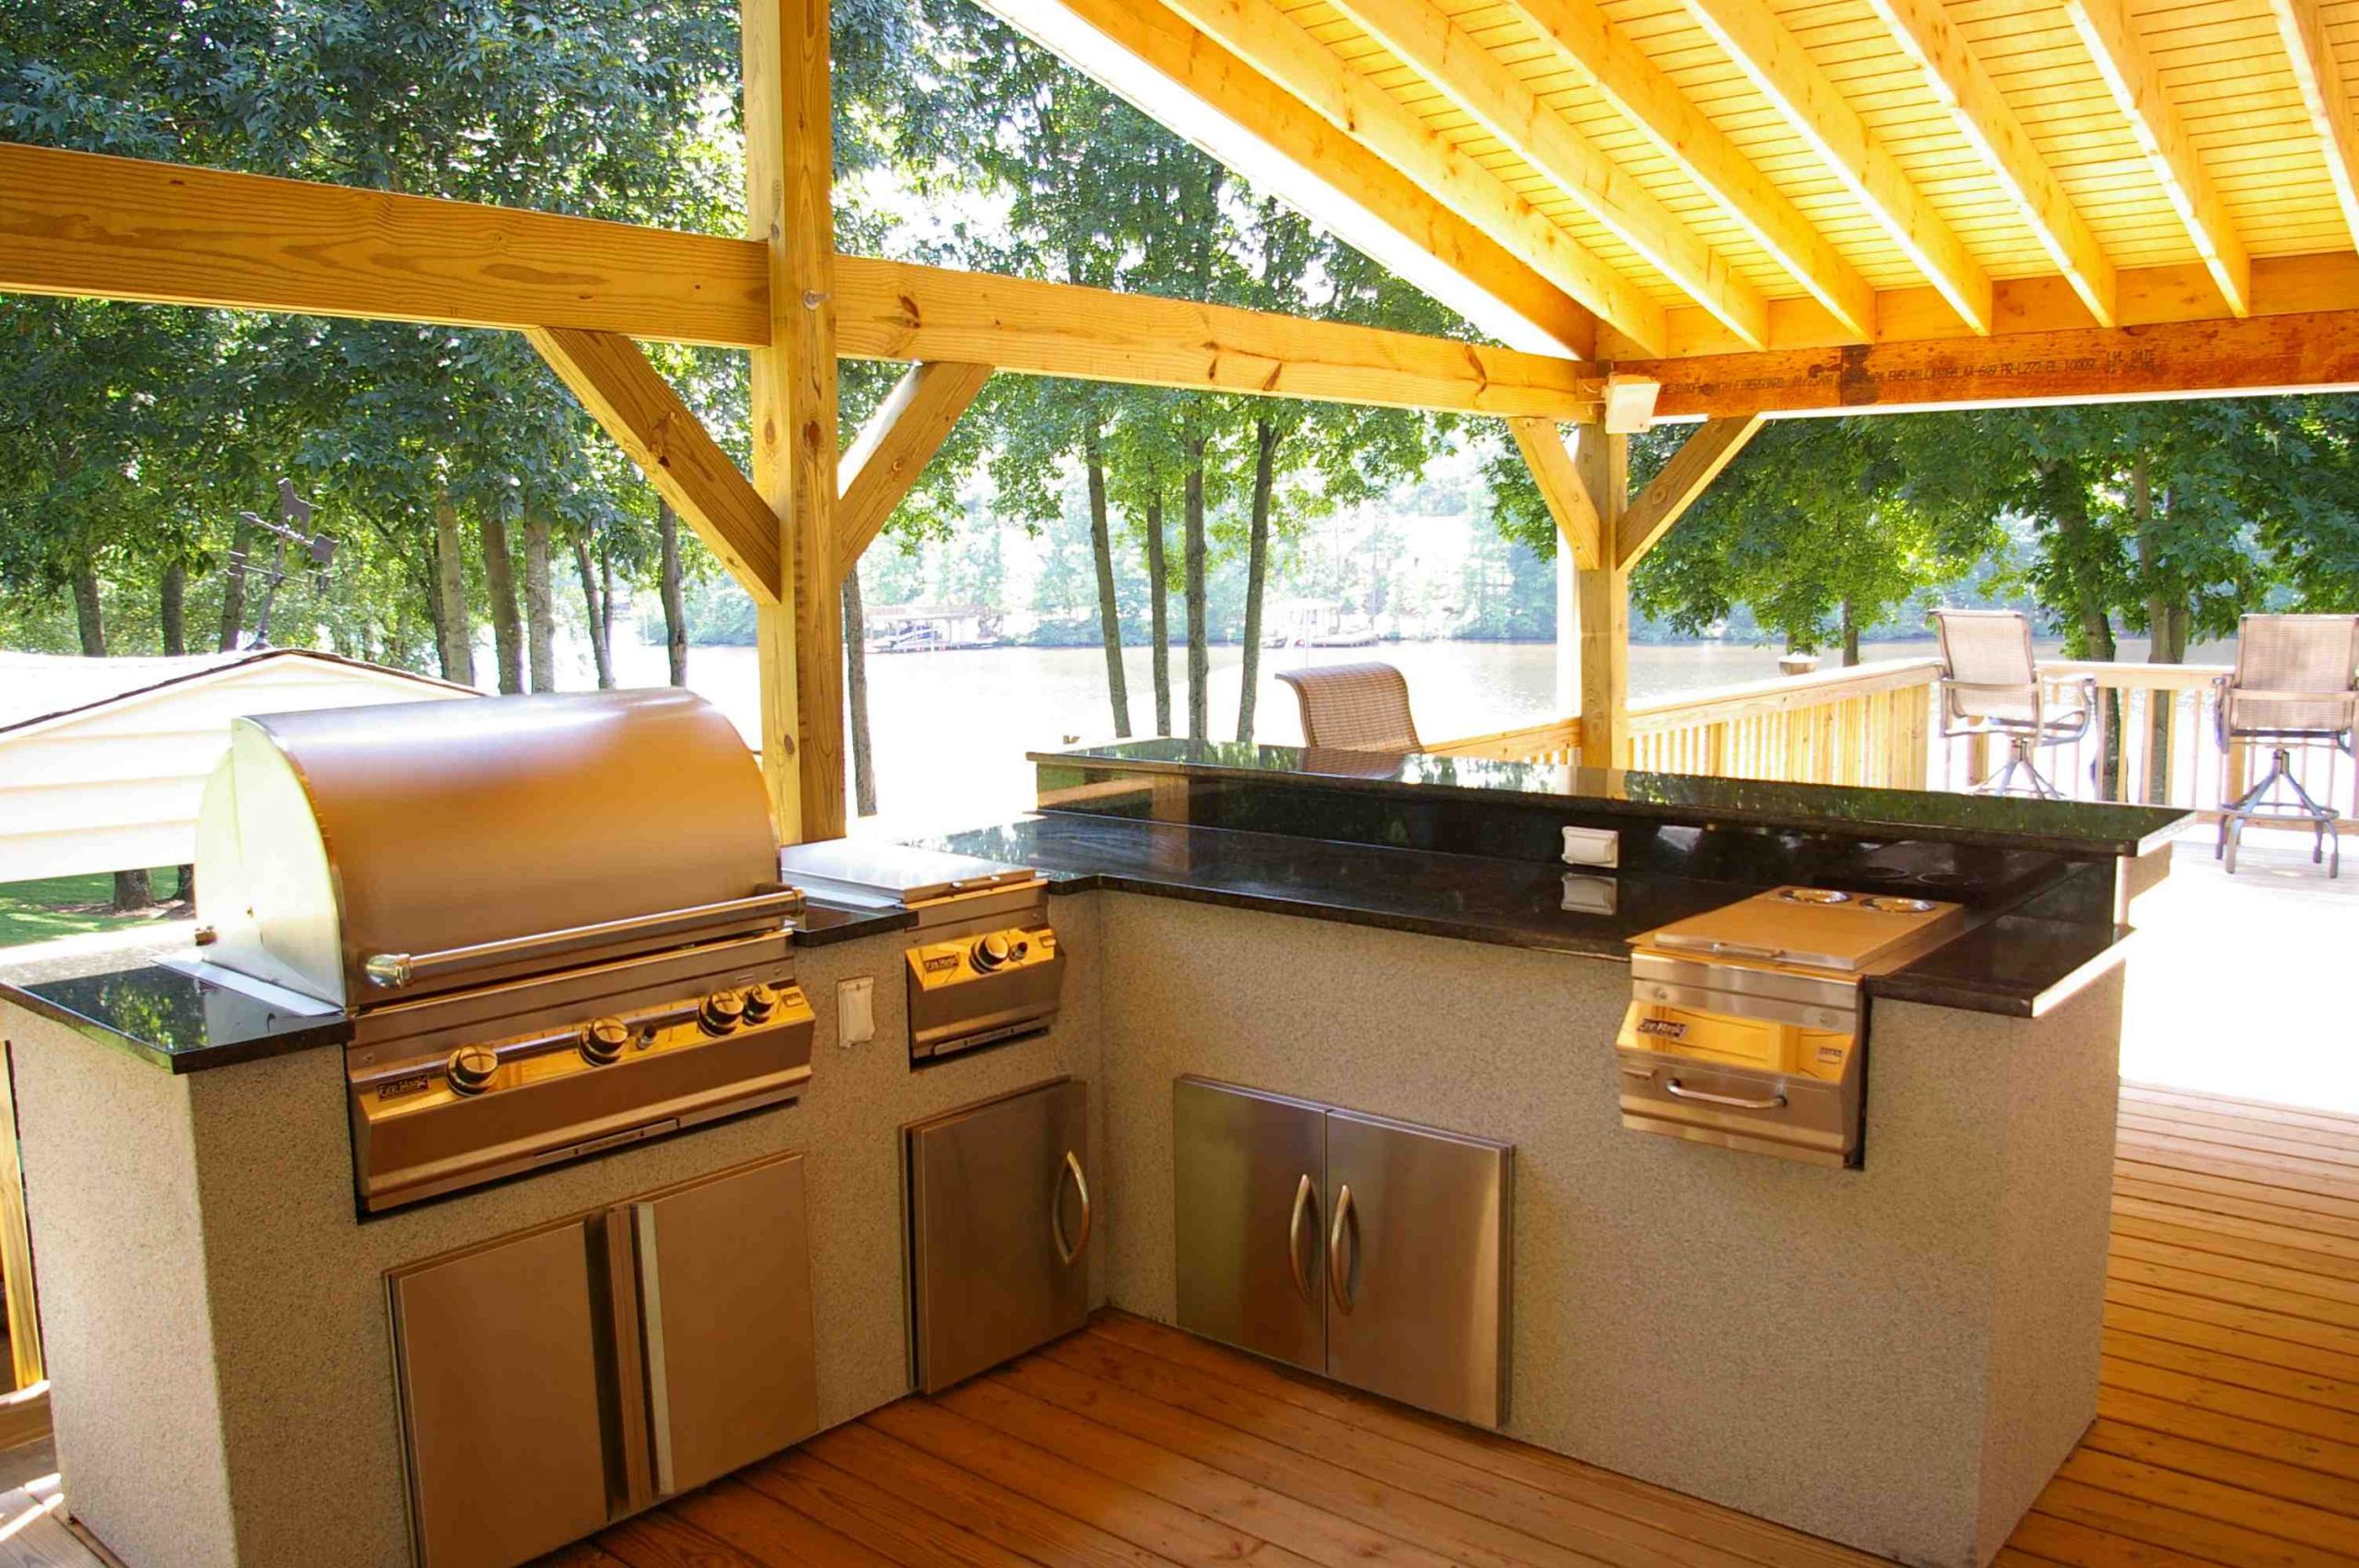 Outdoor Kitchen Cabinet Ideas
 Outdoor Kitchen Design How to Design Outdoor Kitchen